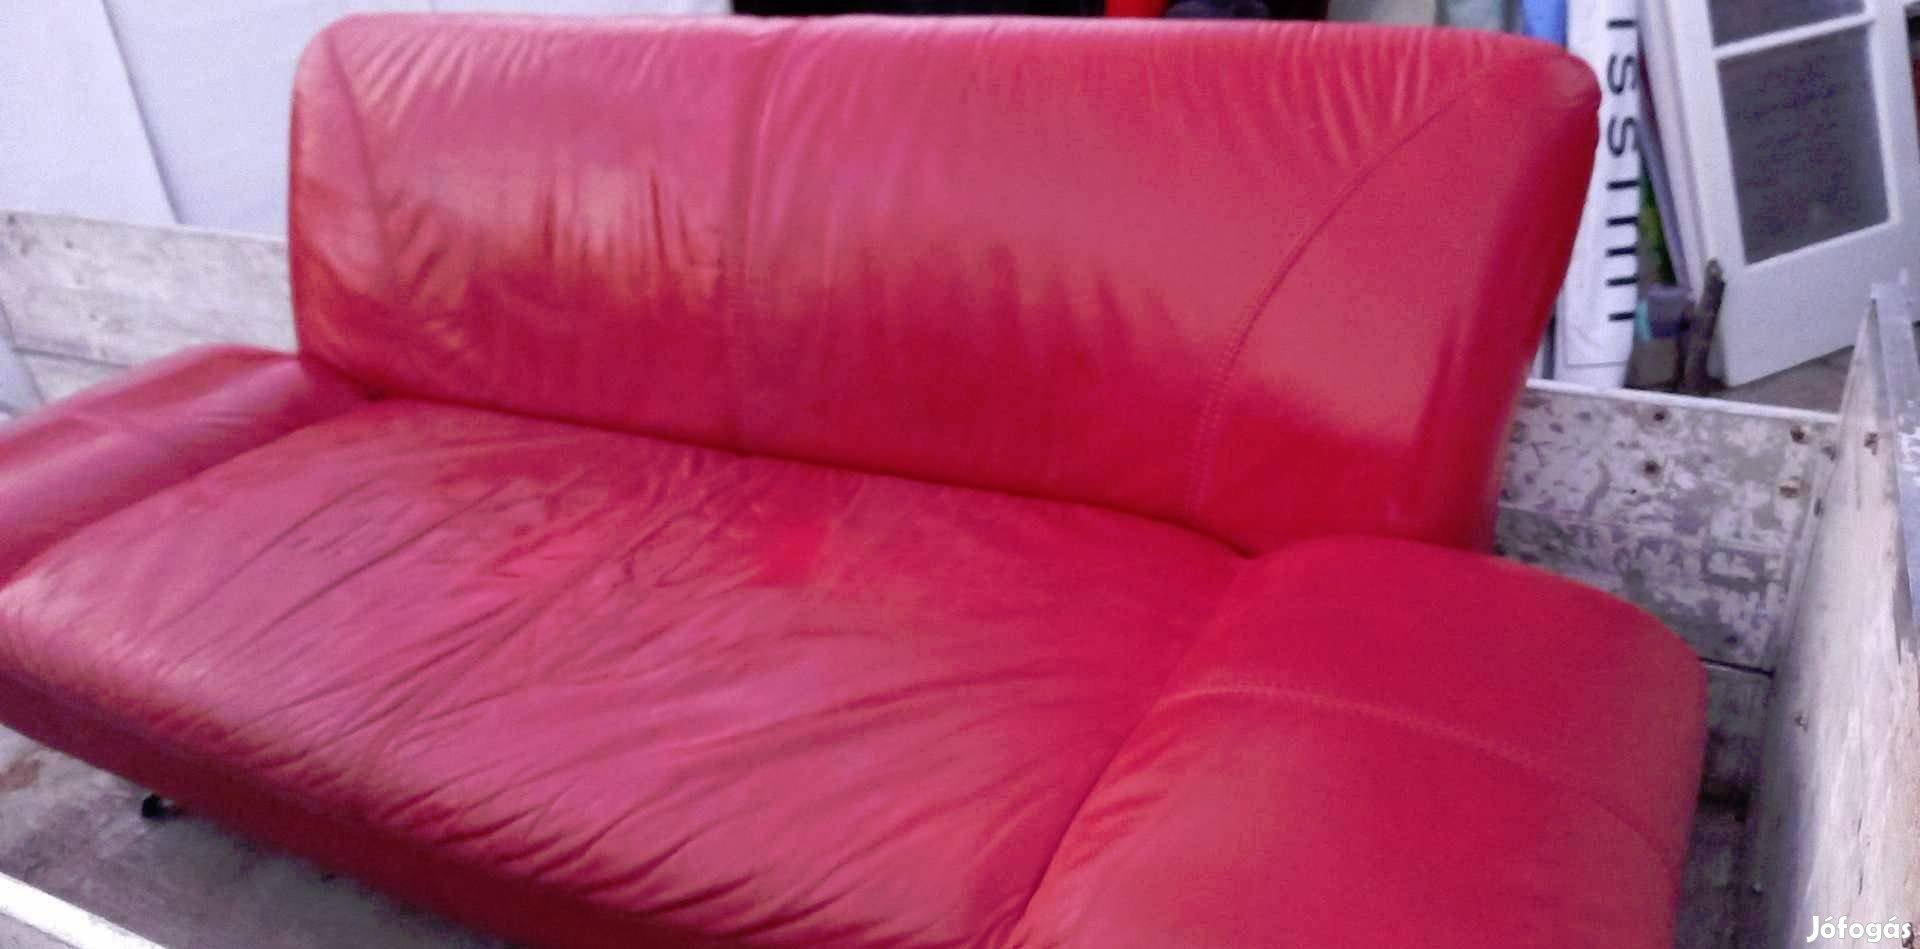 Vagány 3 személyes piros bőr kanapé fotel szófa